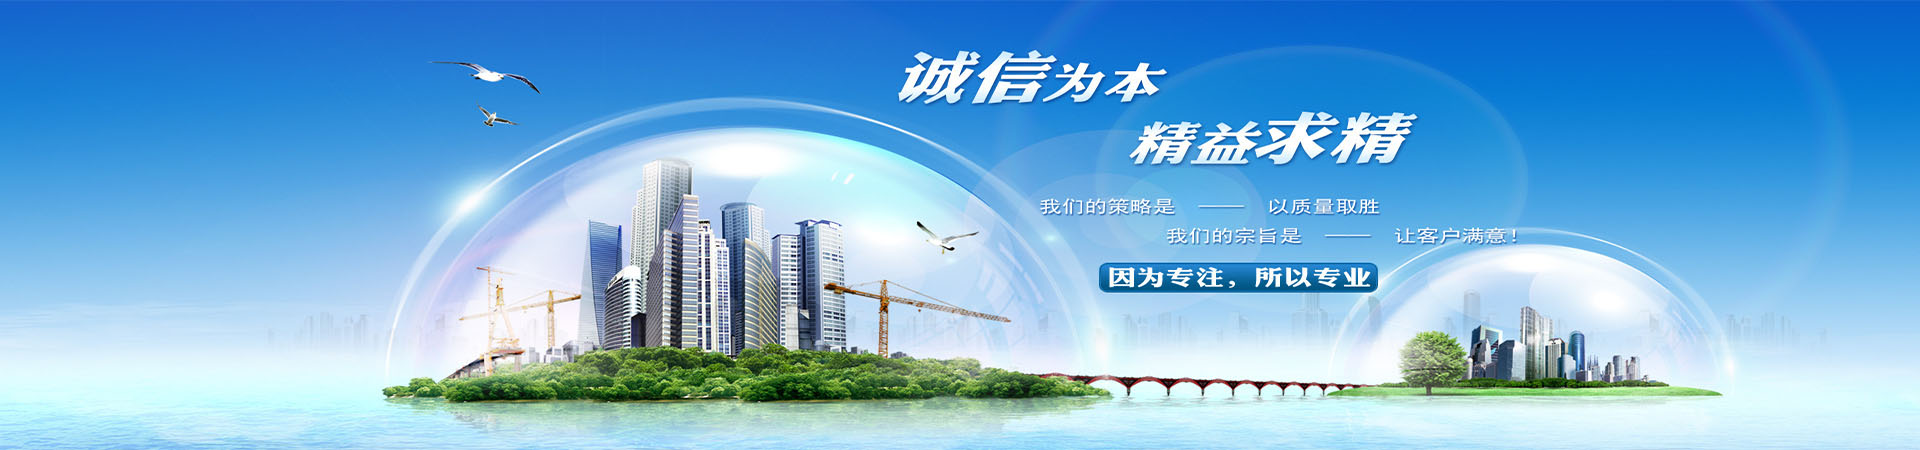 硅钢B15AV1000、S650MC、安庆本地硅钢B15AV1000、S650MC、安庆、安庆硅钢B15AV1000、S650MC